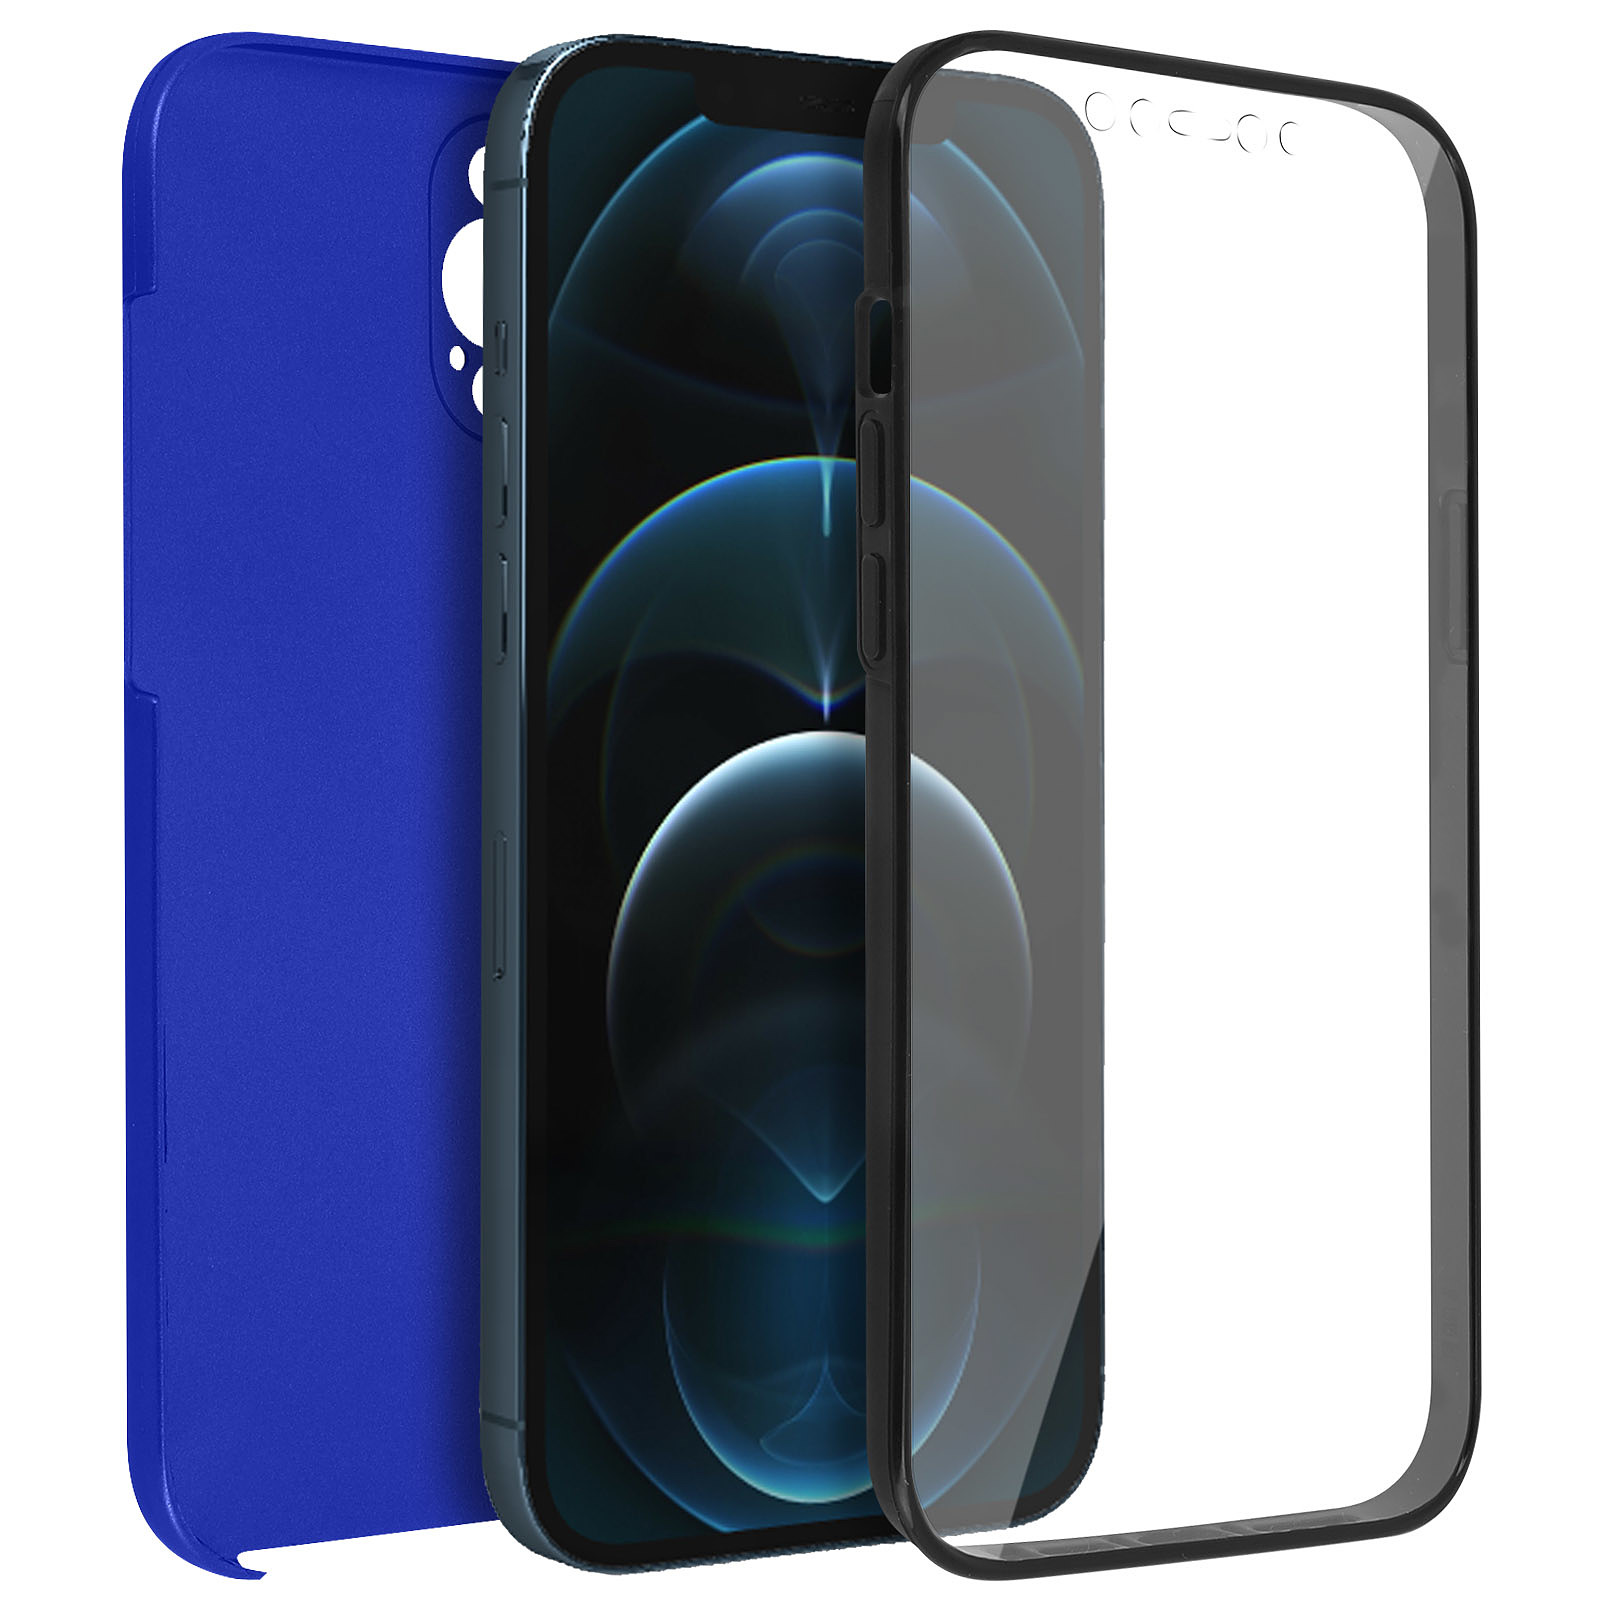 Avizar Coque pour iPhone 12 Pro Max Arrière Rigide et Avant Souple Antichoc Bleu - Coque telephone Avizar